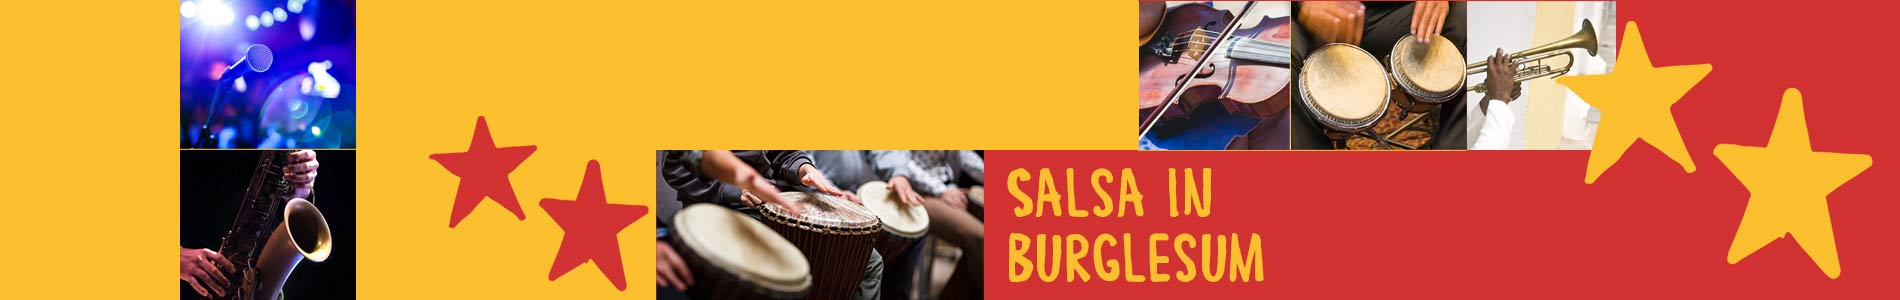 Salsa in Burglesum – Salsa lernen und tanzen, Tanzkurse, Partys, Veranstaltungen